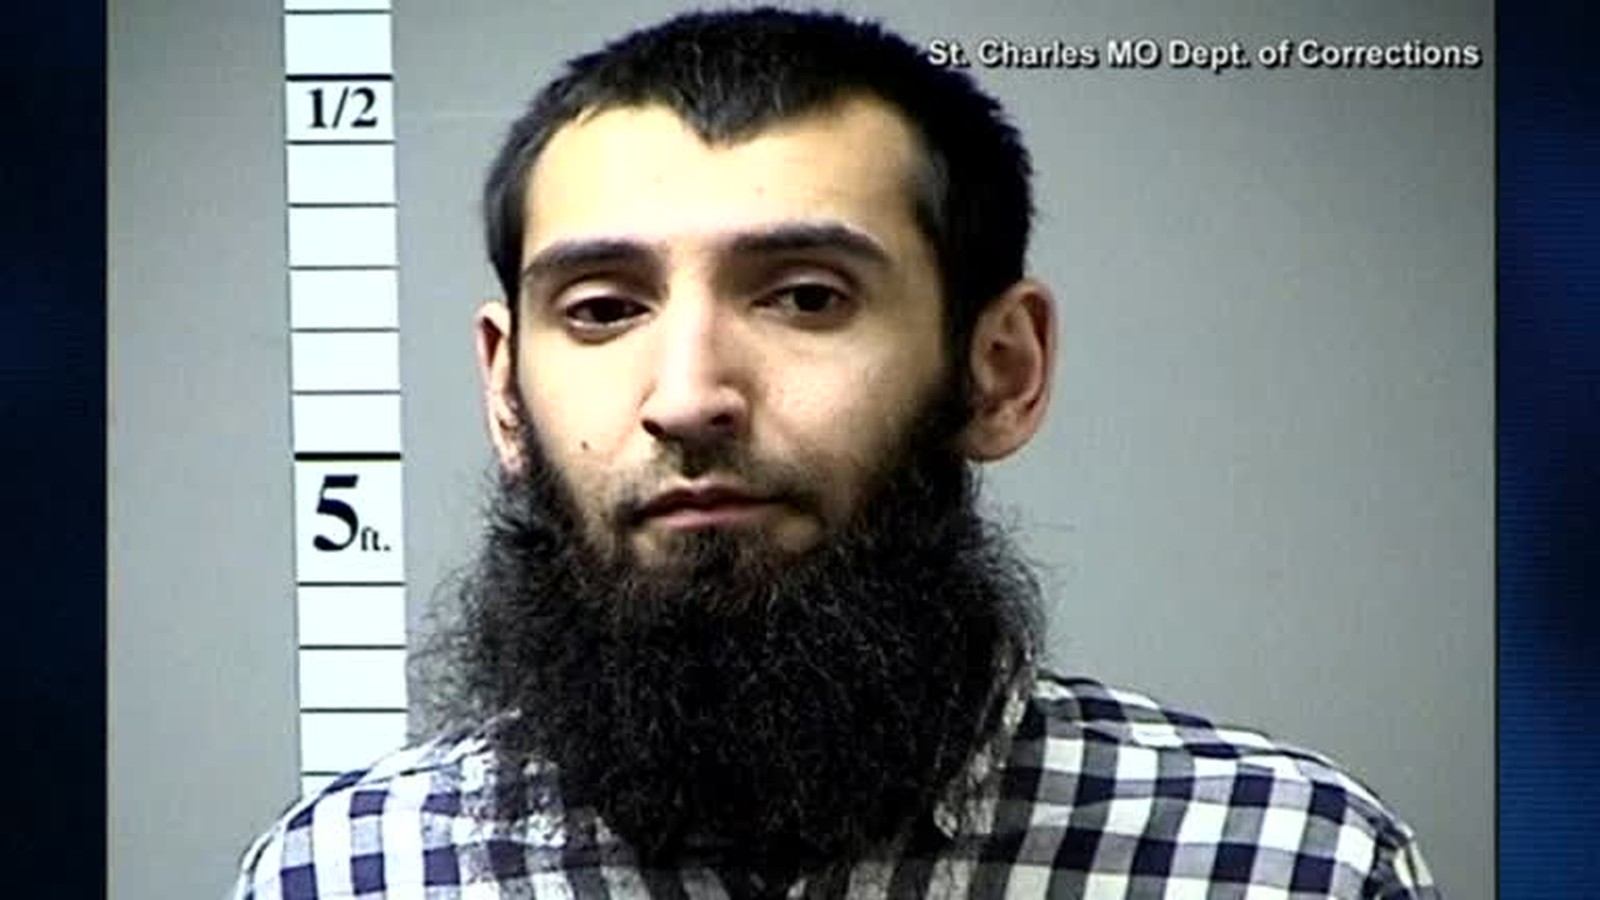 Foto do suspeito de ser o autor do atentado em Nova York nesta terça (31). Ele foi identificado como Sayfullo Saipov, de 29 anos (Foto: Reuters/Department of Corrections)